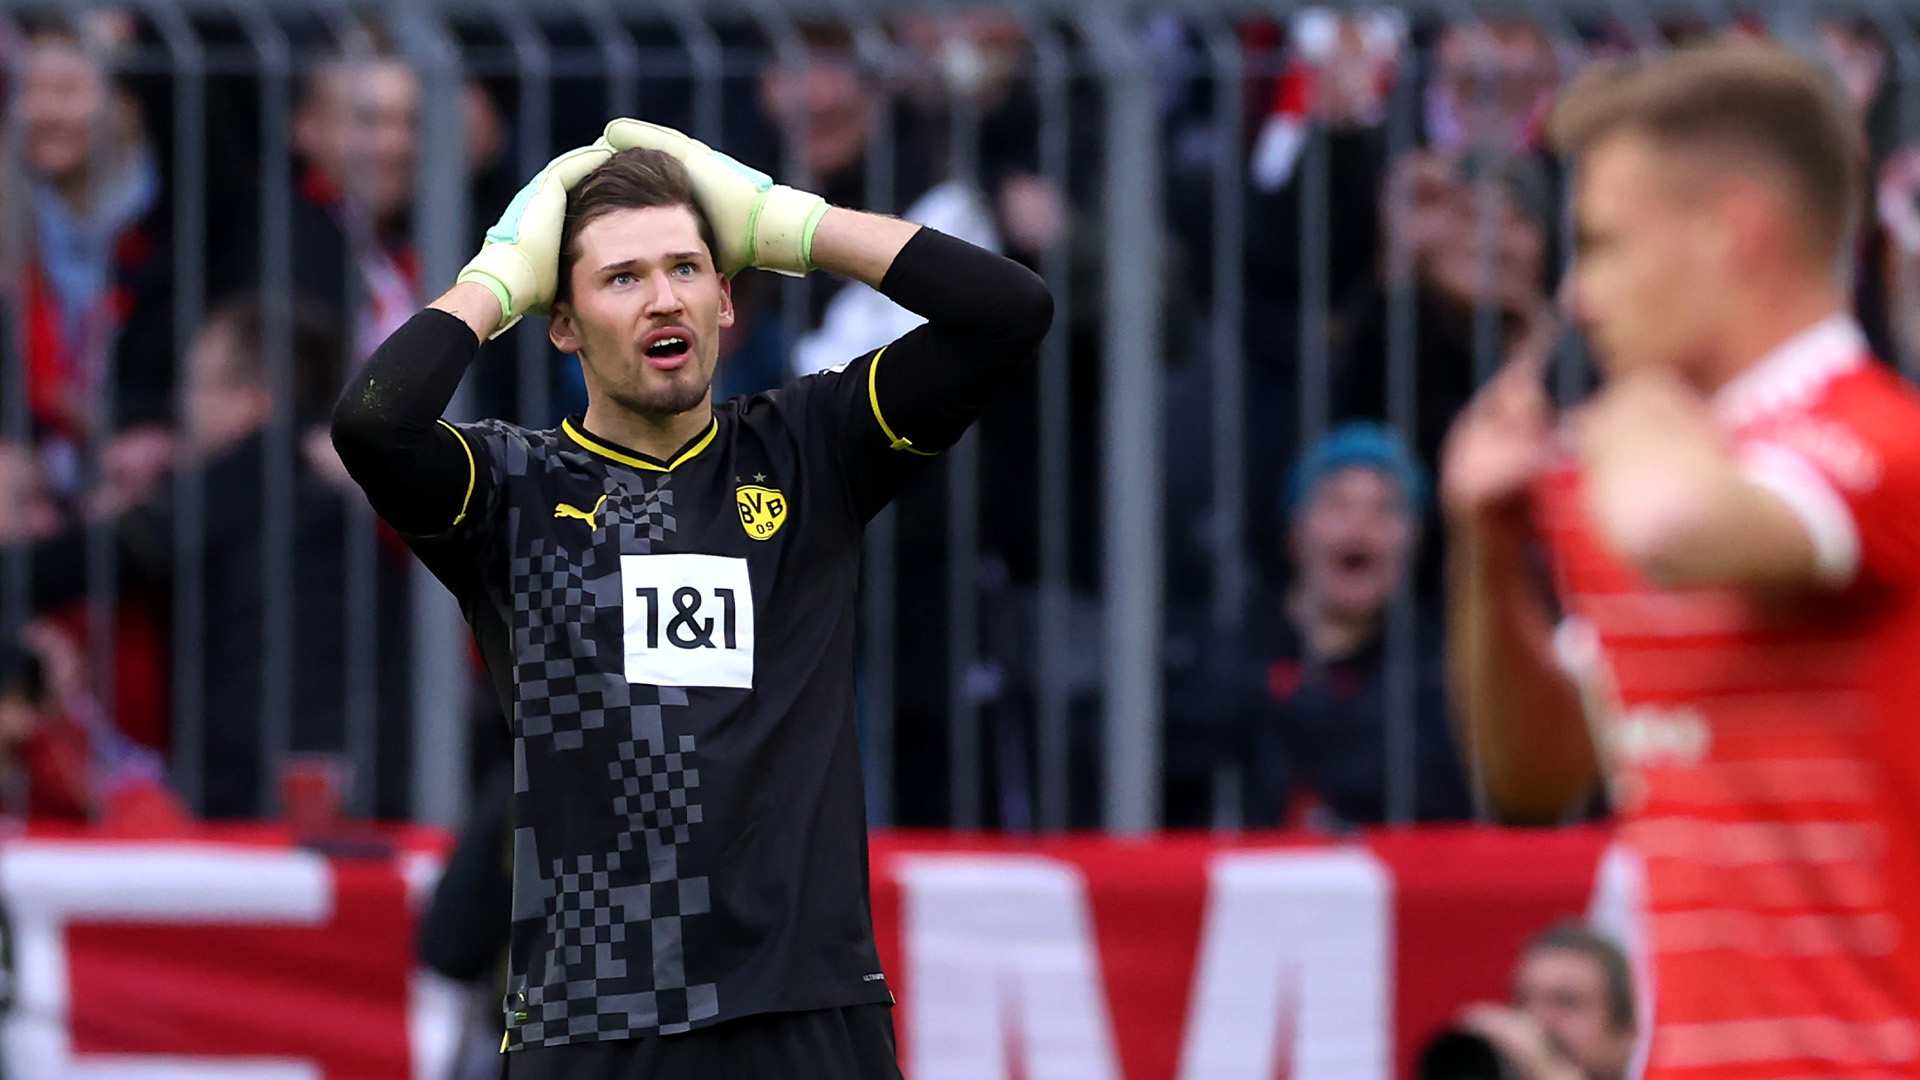 El error de principiante del arquero de Borussia Dortmund en la dolorosa derrota ante Bayern Múnich en el clásico